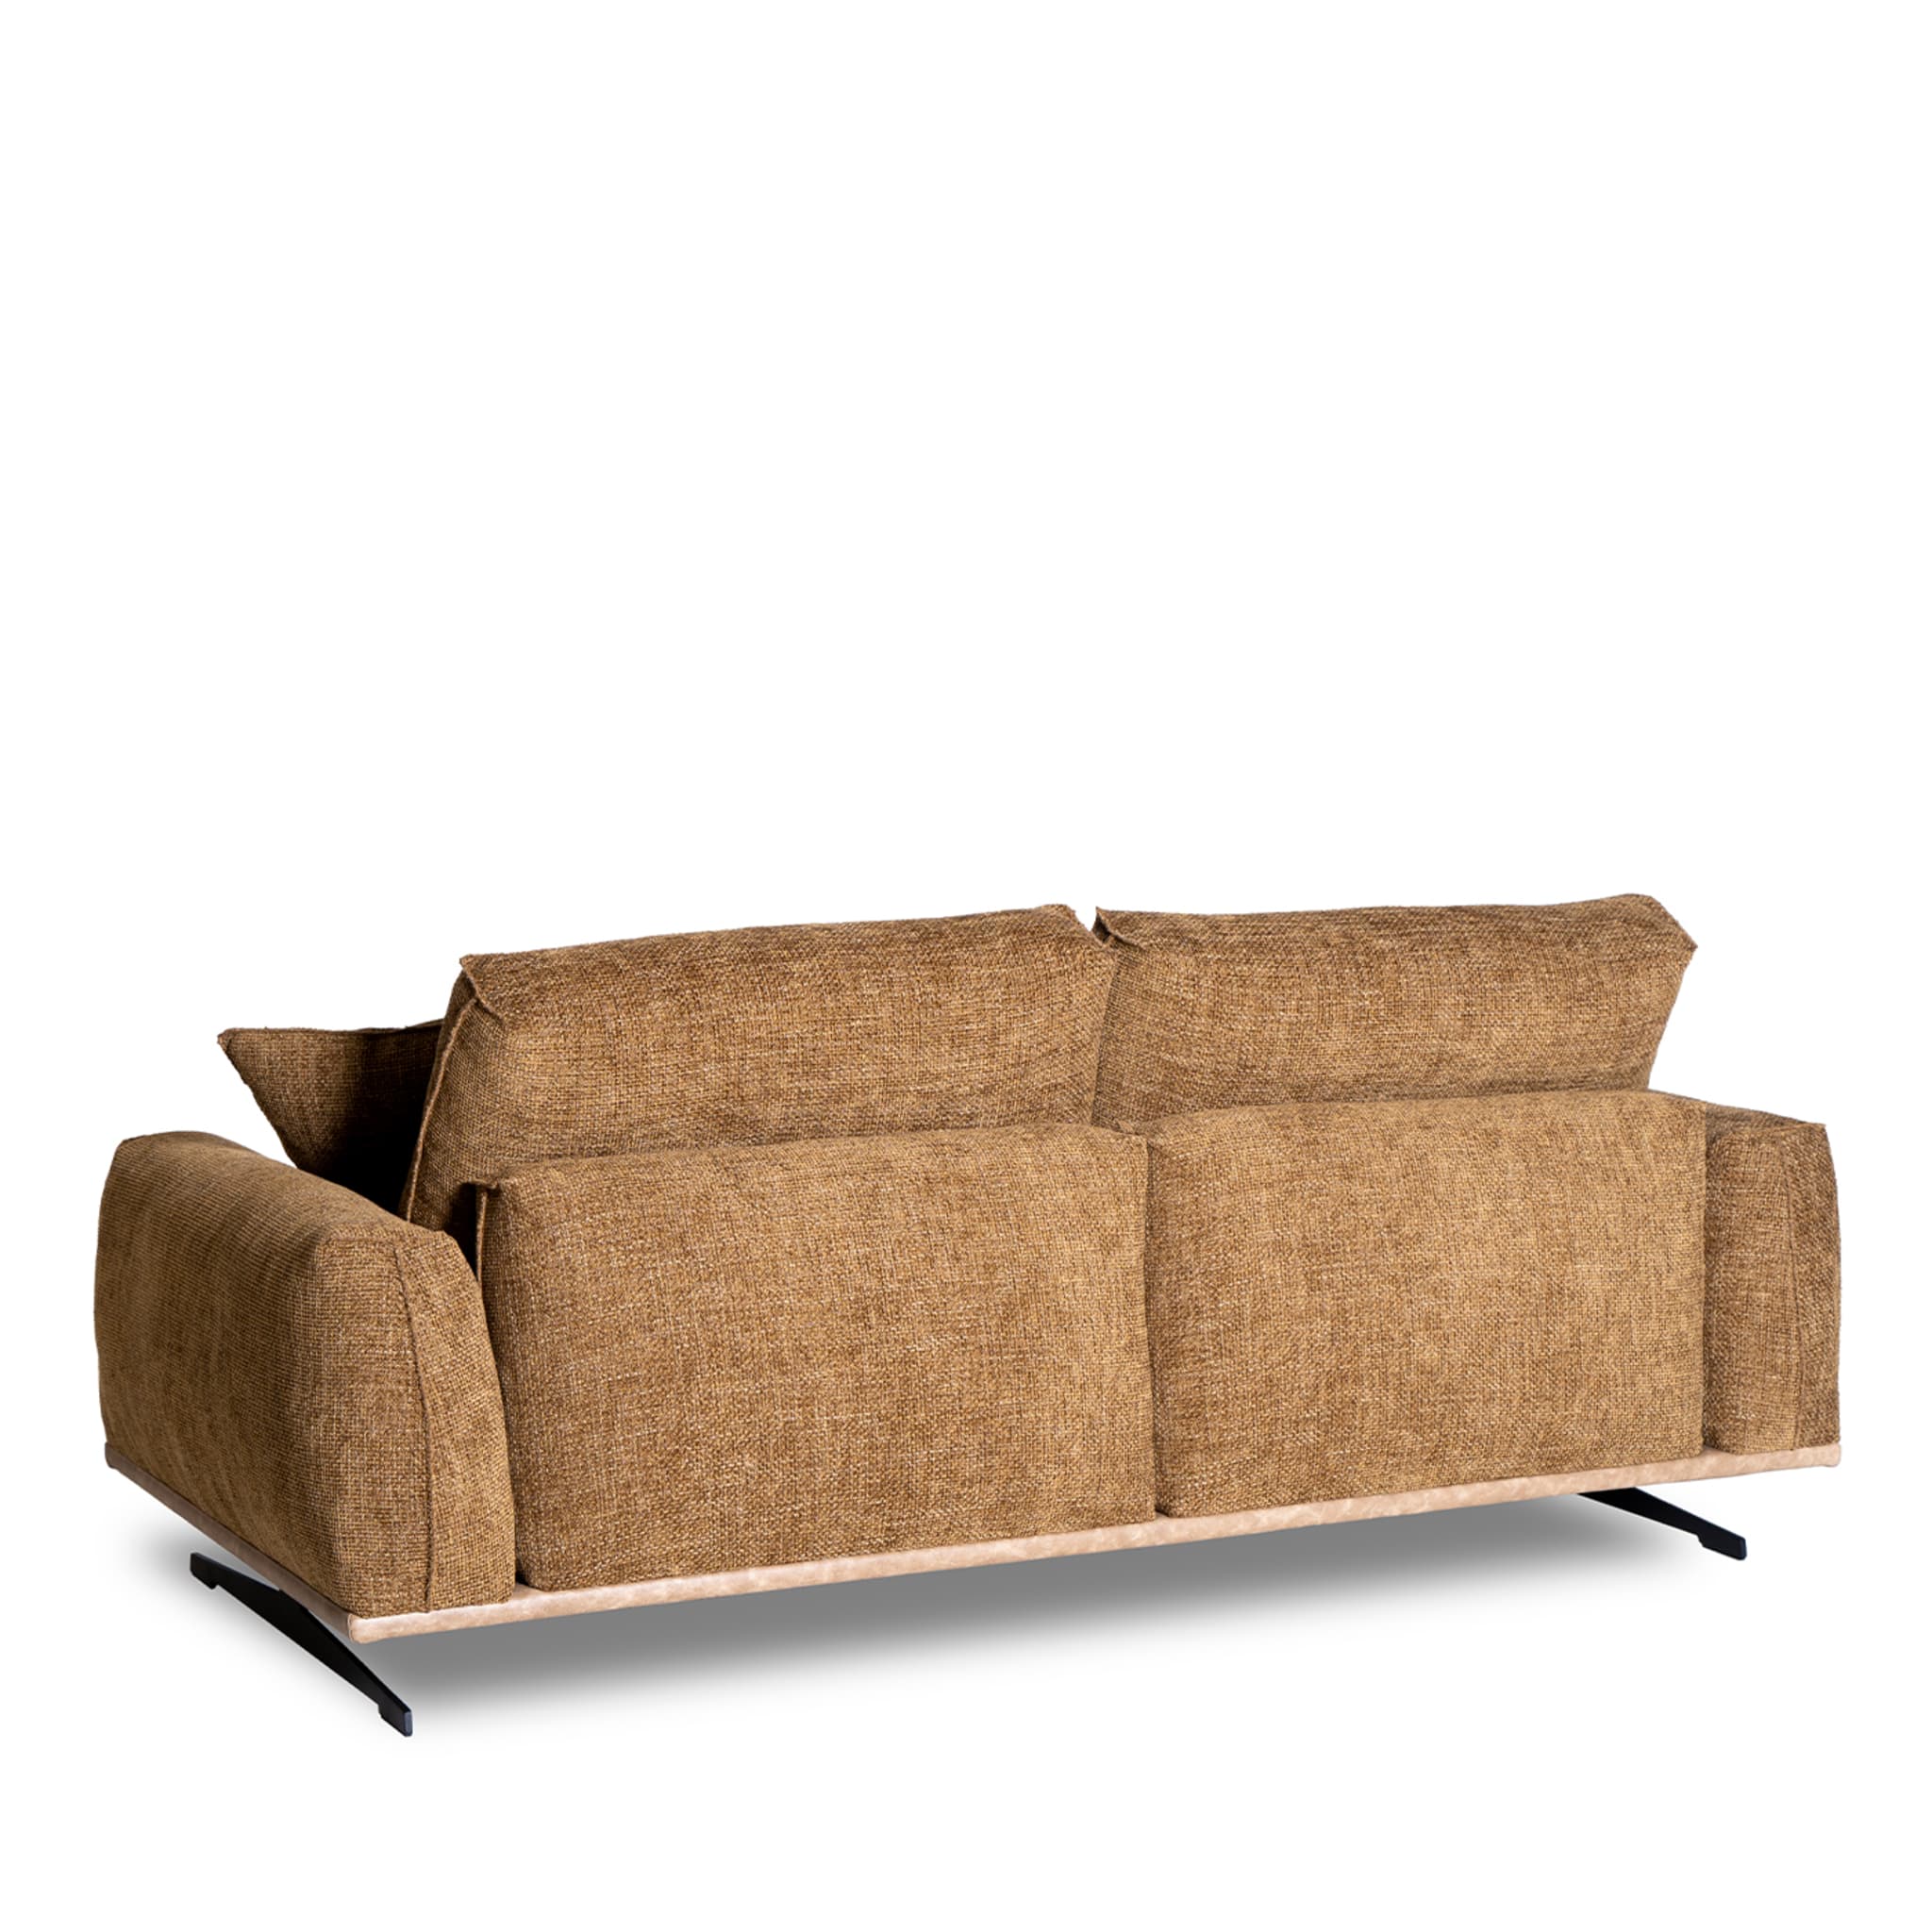 Boboli 2-Seater Sofa by Marco and Giulio Mantellassi - Alternative view 3